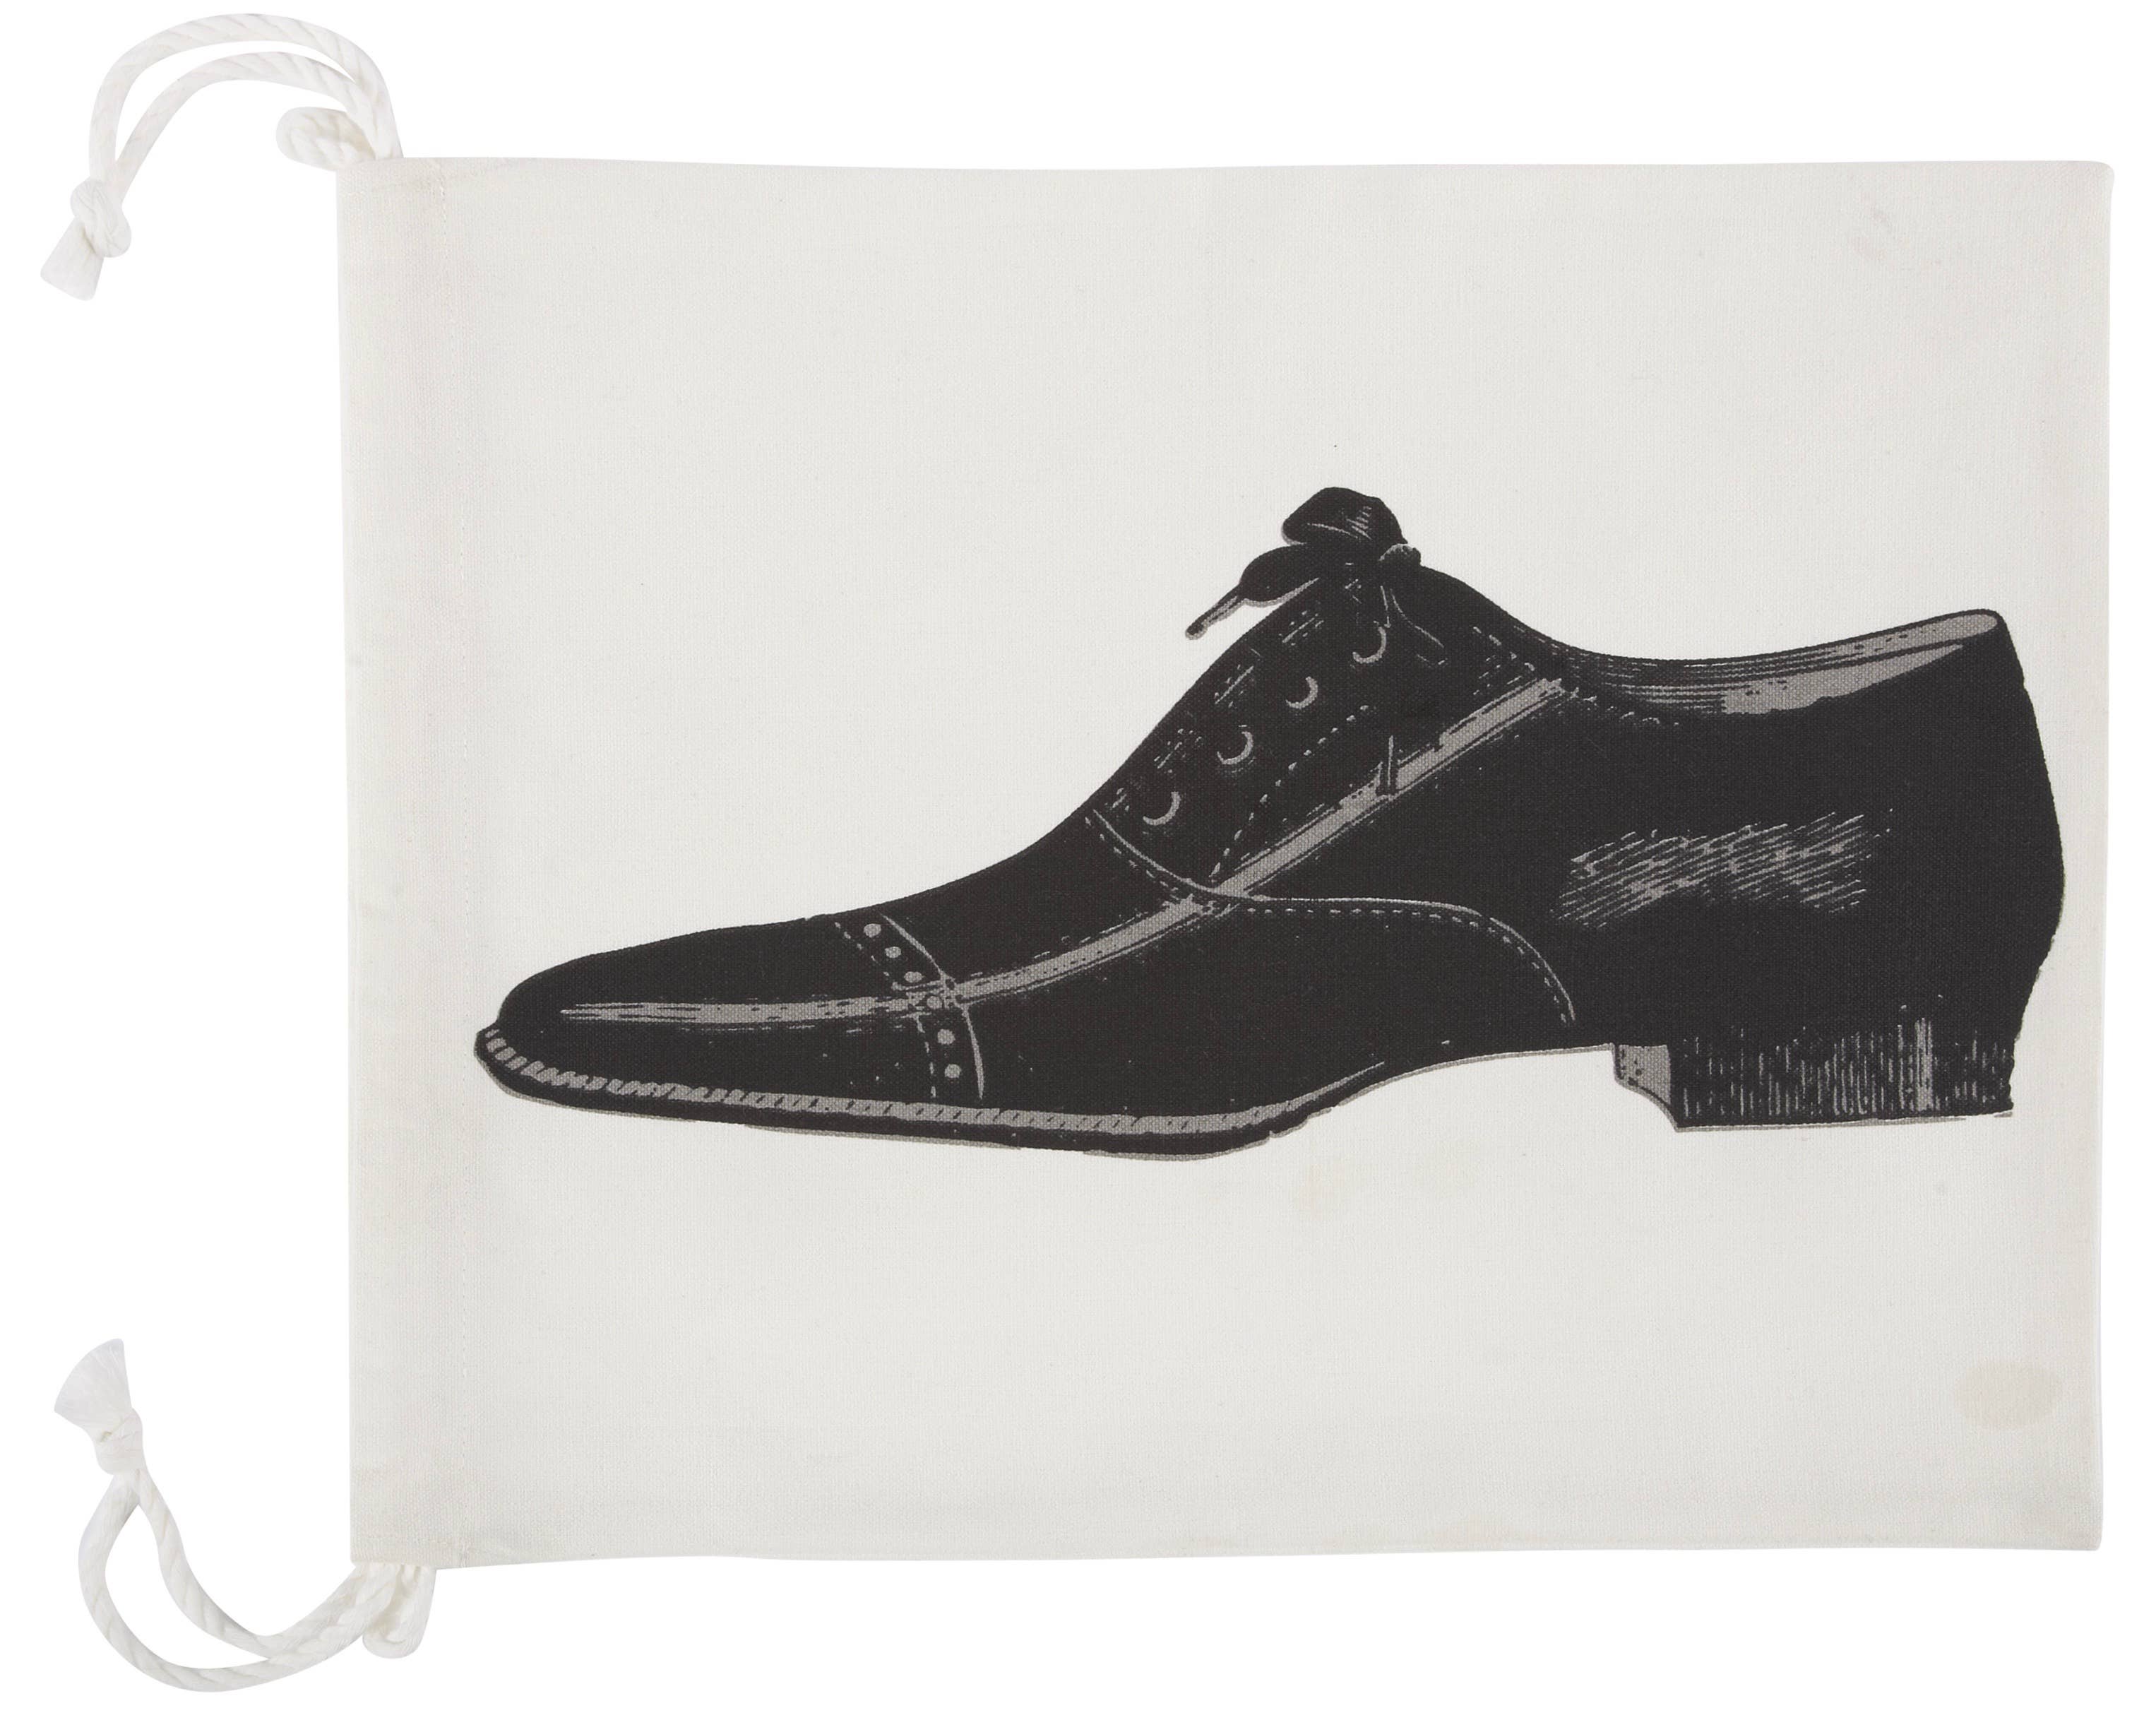 Vintage-Inspired Travel Bag | Men's Shoe Bag